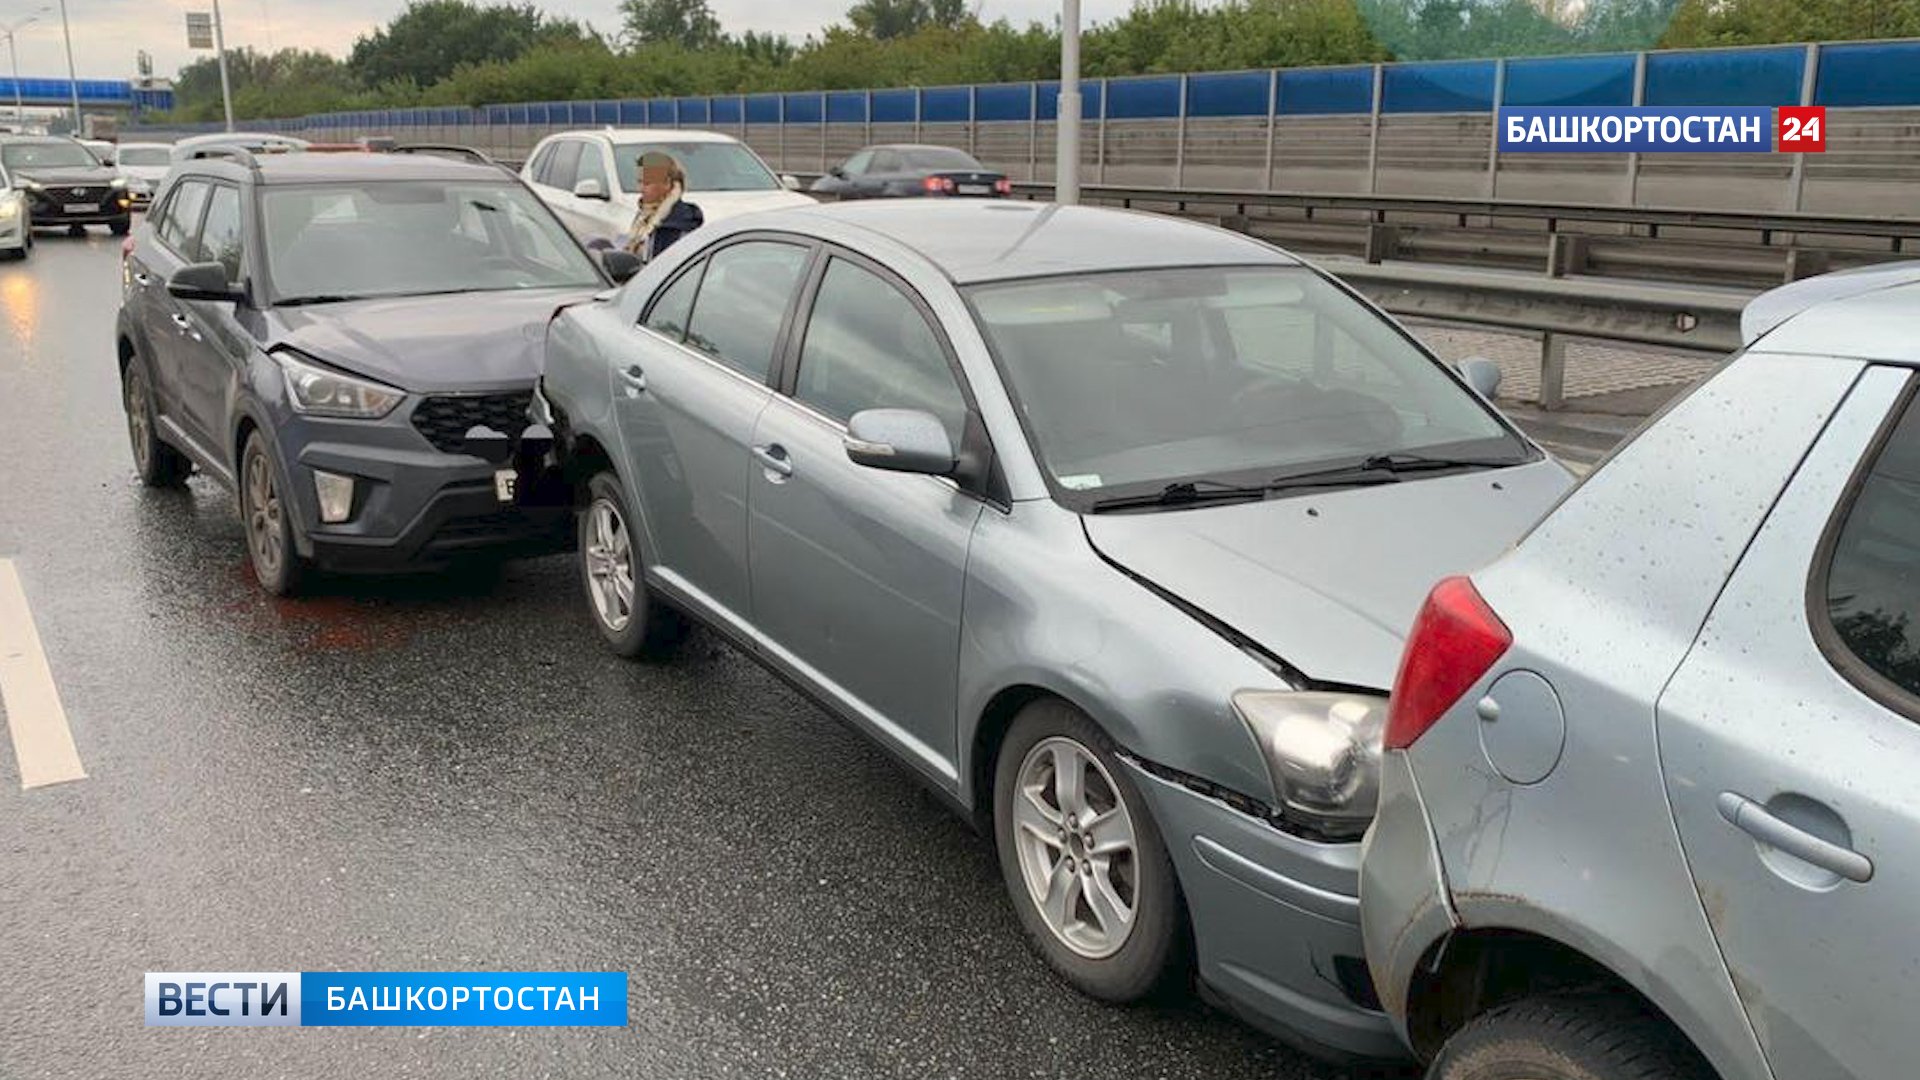 Под Уфой водитель Hyundai устроил массовое ДТП на трассе: есть пострадавший